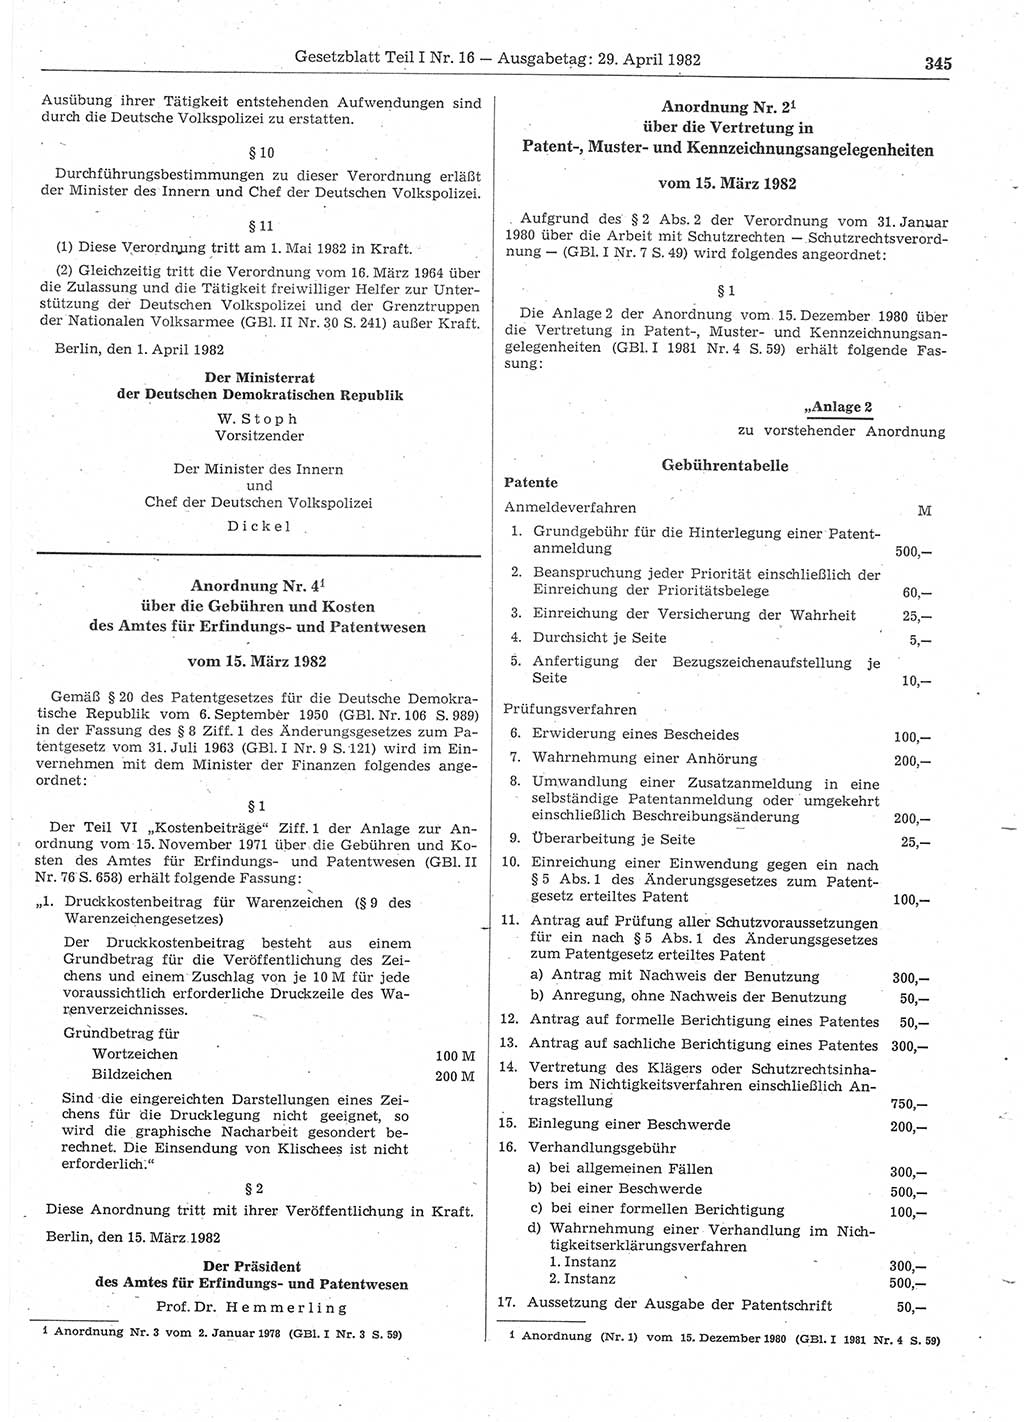 Gesetzblatt (GBl.) der Deutschen Demokratischen Republik (DDR) Teil Ⅰ 1982, Seite 345 (GBl. DDR Ⅰ 1982, S. 345)